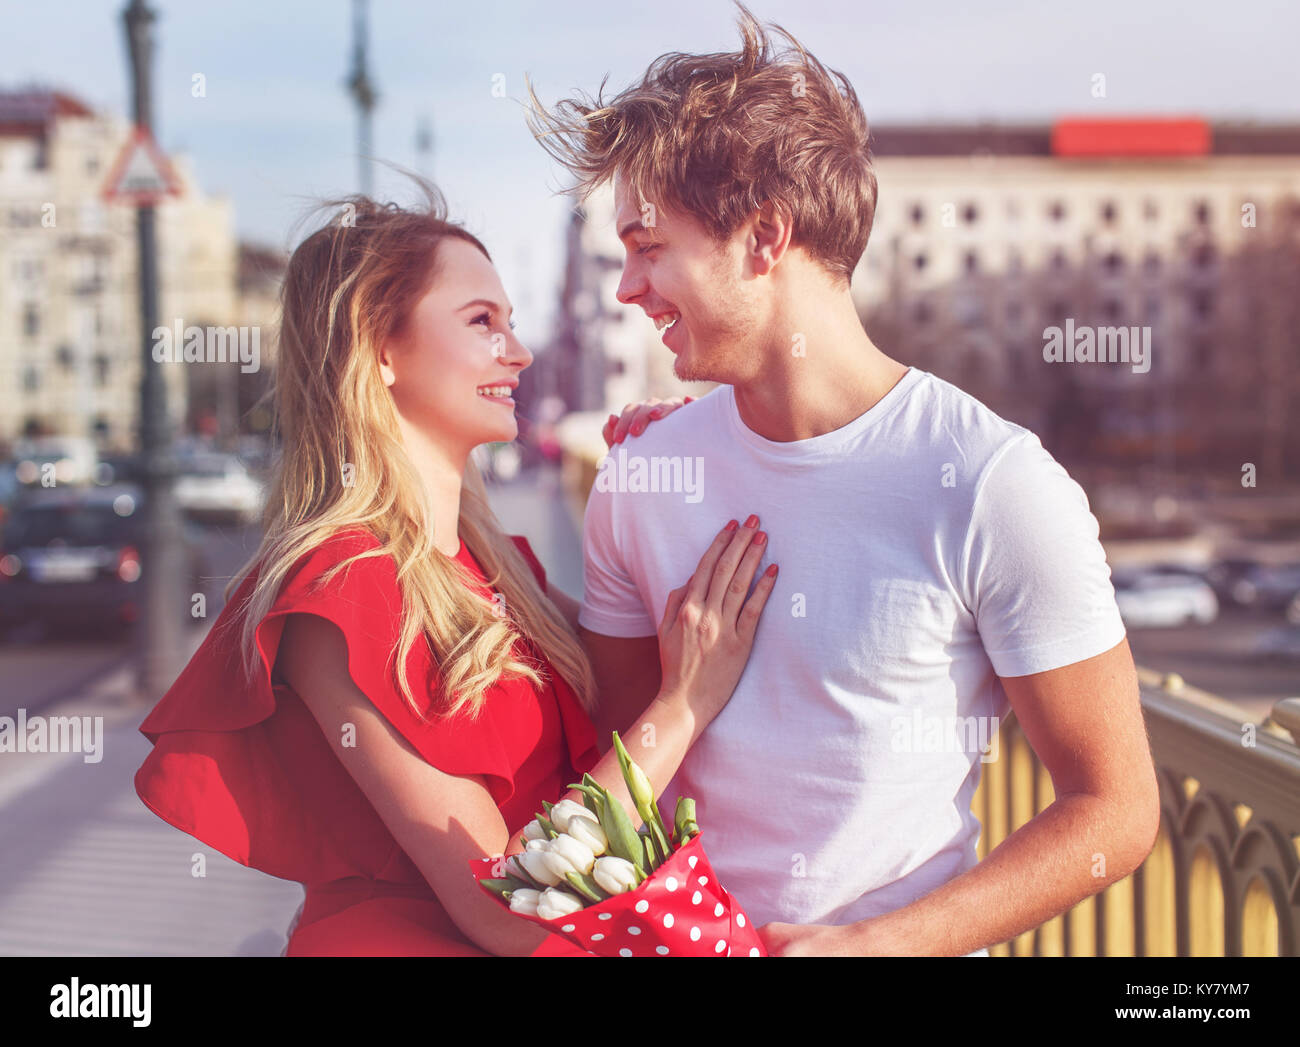 Liebe auf den ersten Blick, junges Paar dating im Freien Stockfoto